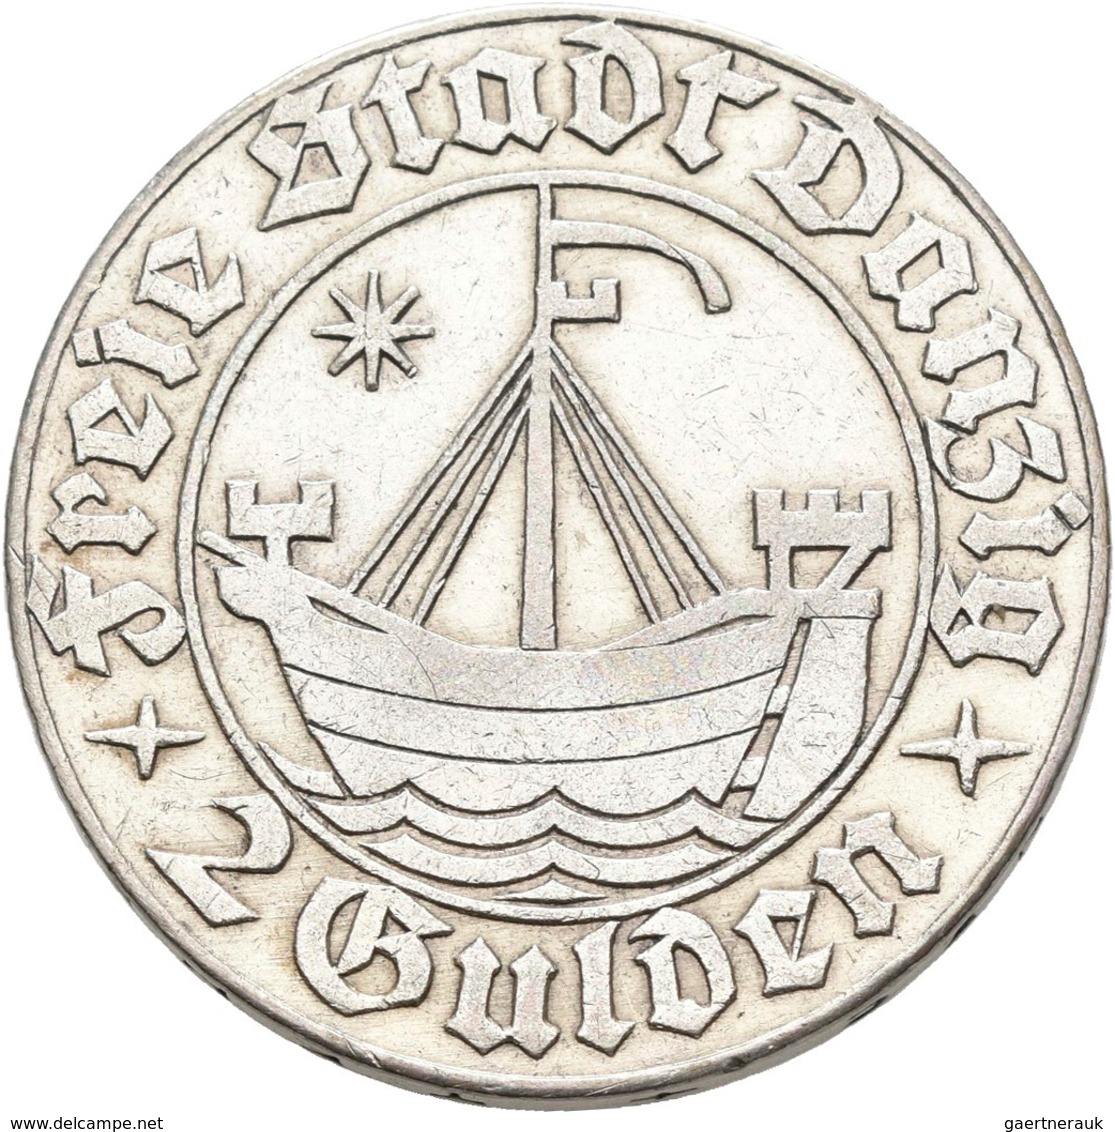 Danzig: Typensammlung Danzig, dabei: 10 Pfennig 1920 Eisen; 8-Münzen-Set 1923 (1 Pf. - 5 Gulden); 6-